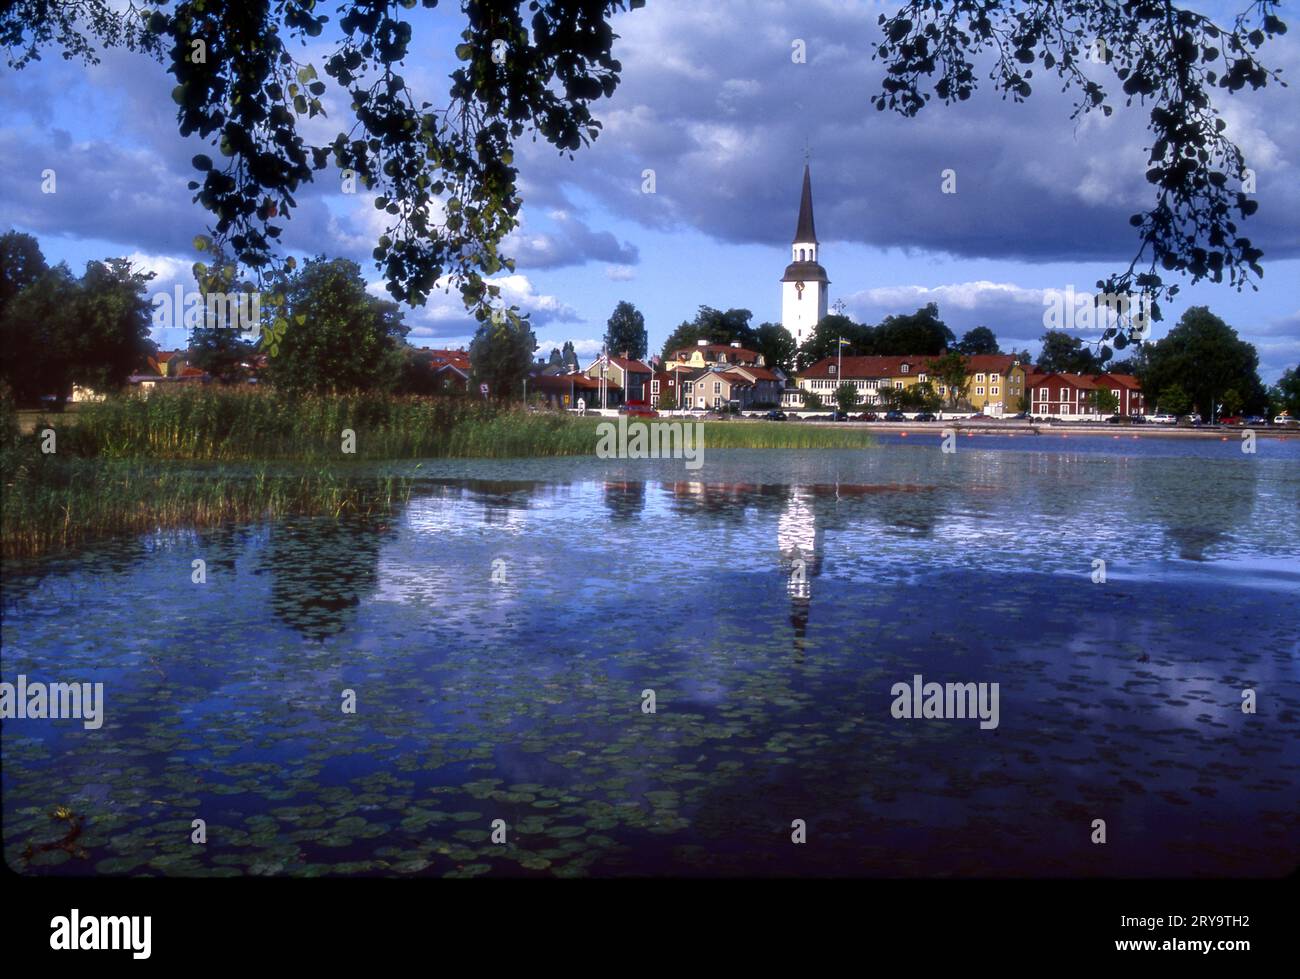 Malerischer Blick auf Mariefred, Schweden, die zur schönsten Stadt Schwedens gewählt wurde. Stockfoto